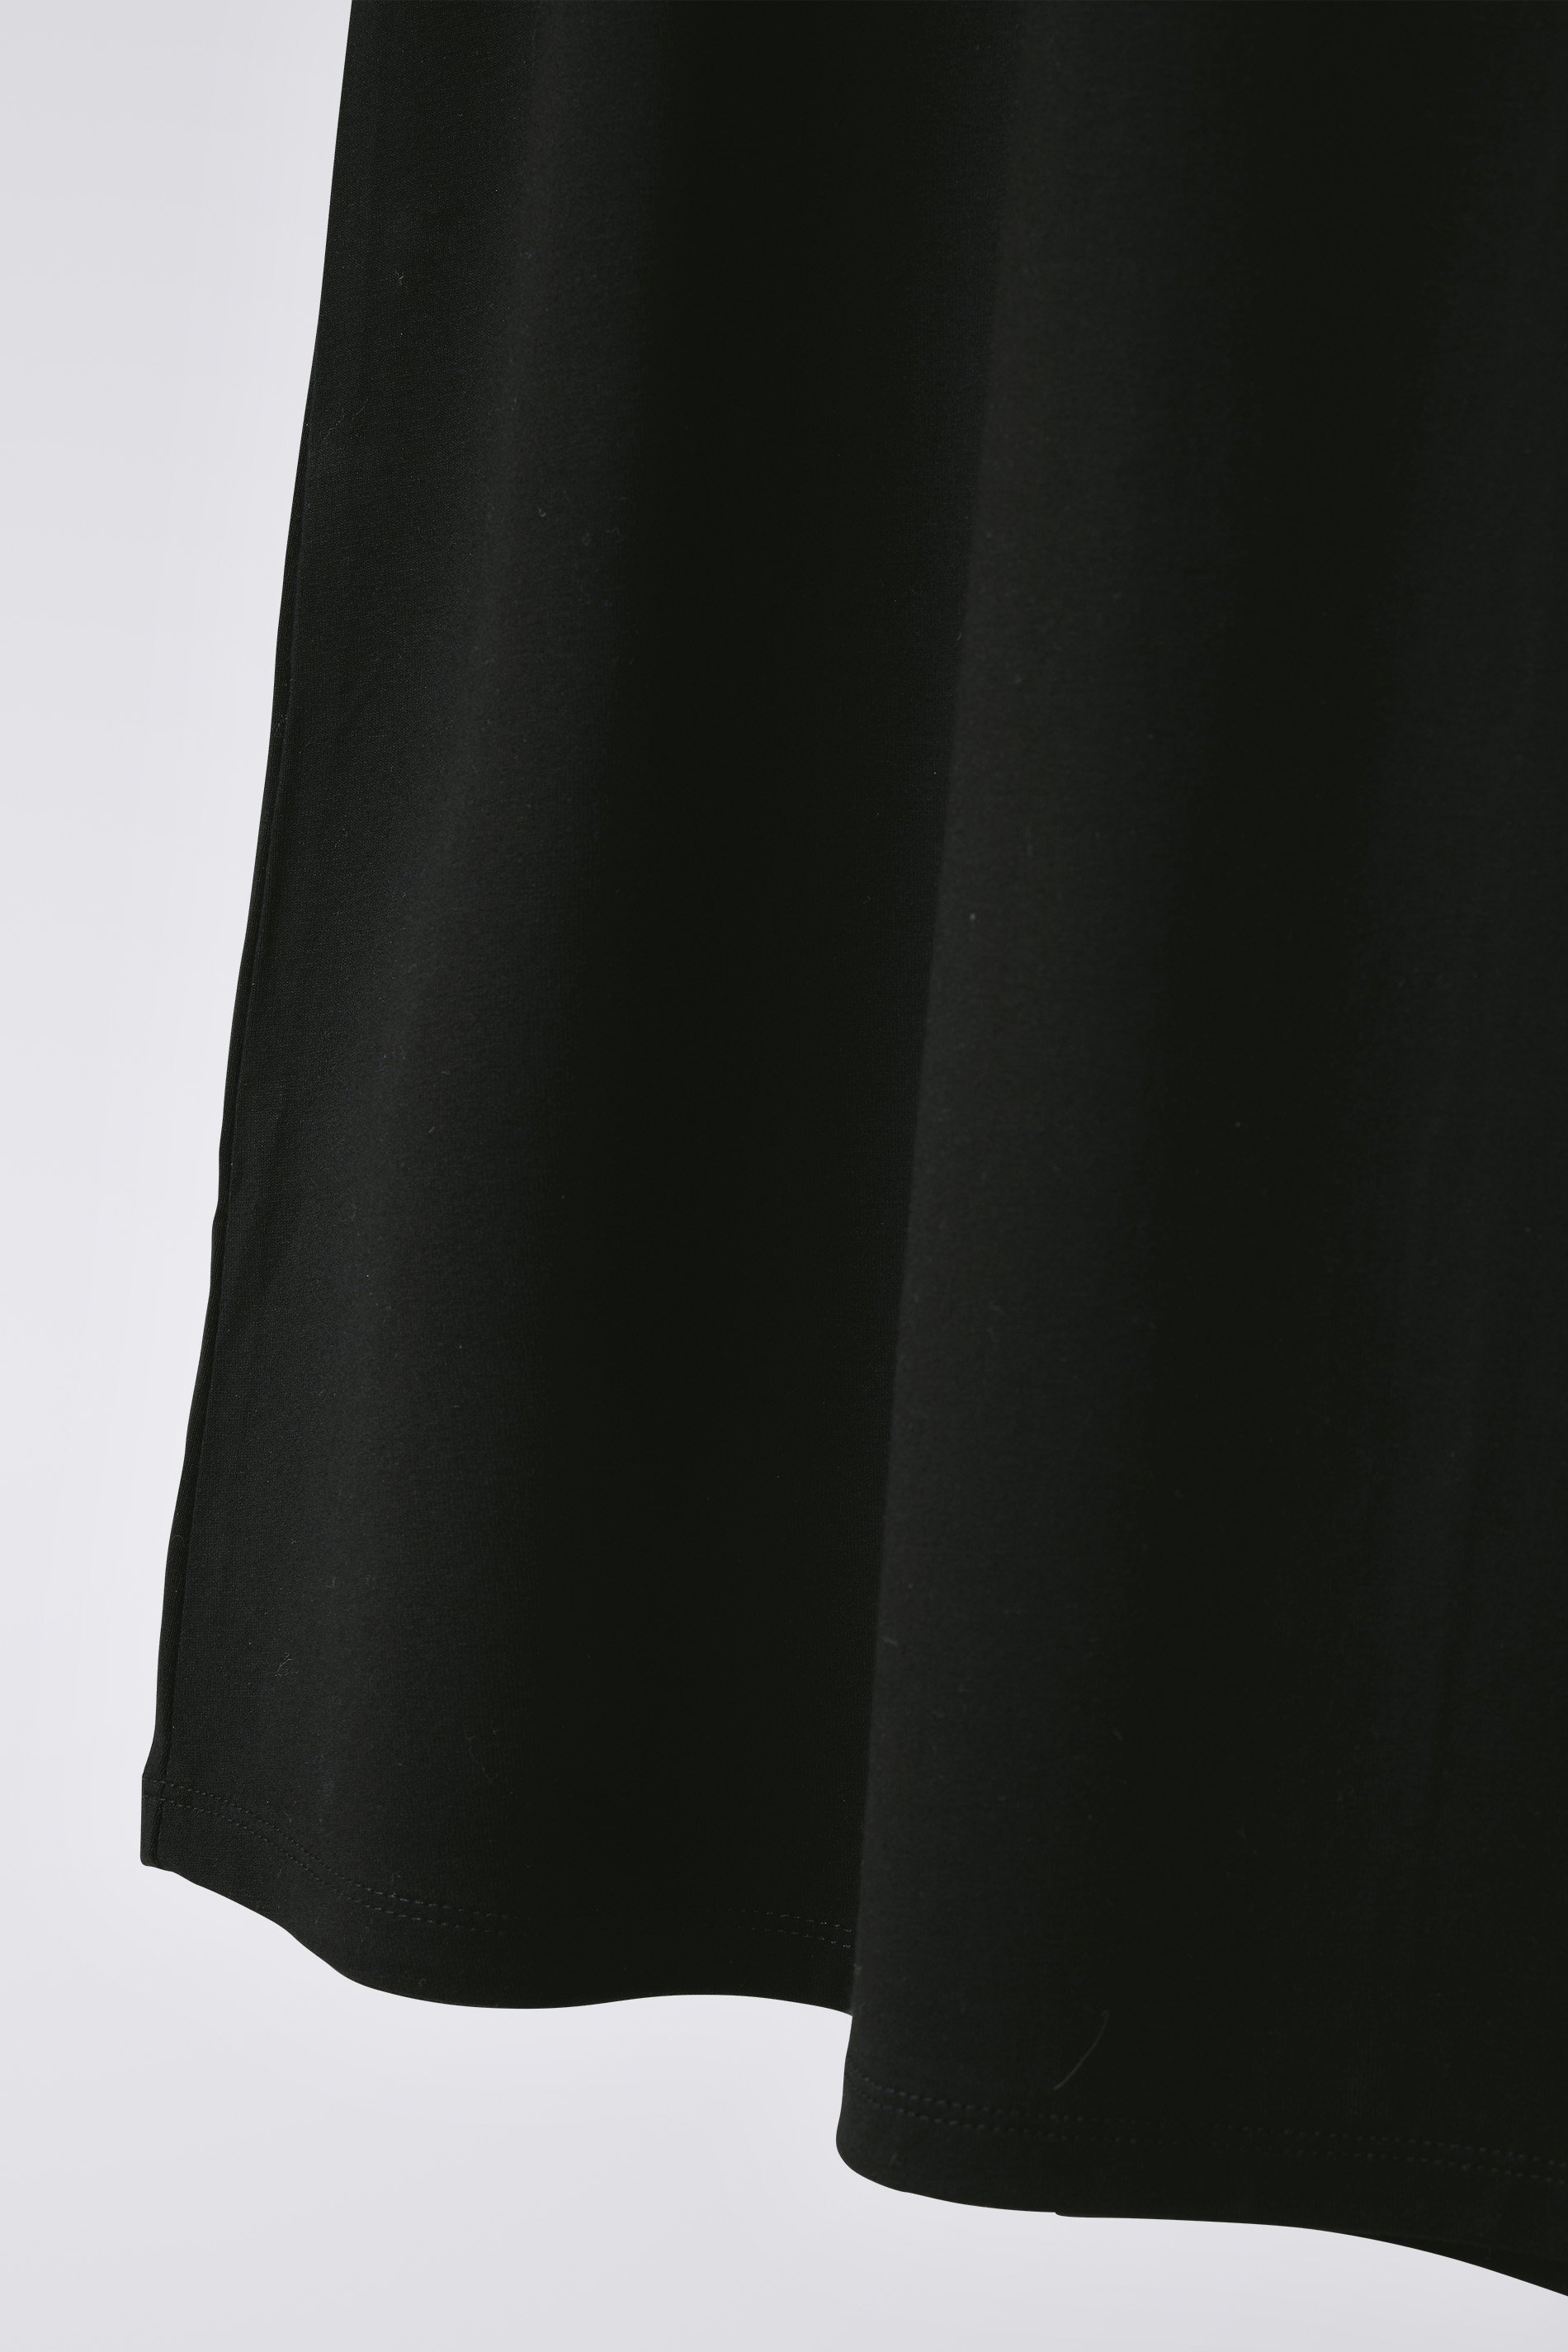 EVANS Plus Size Black Sequin Star Top | Evans